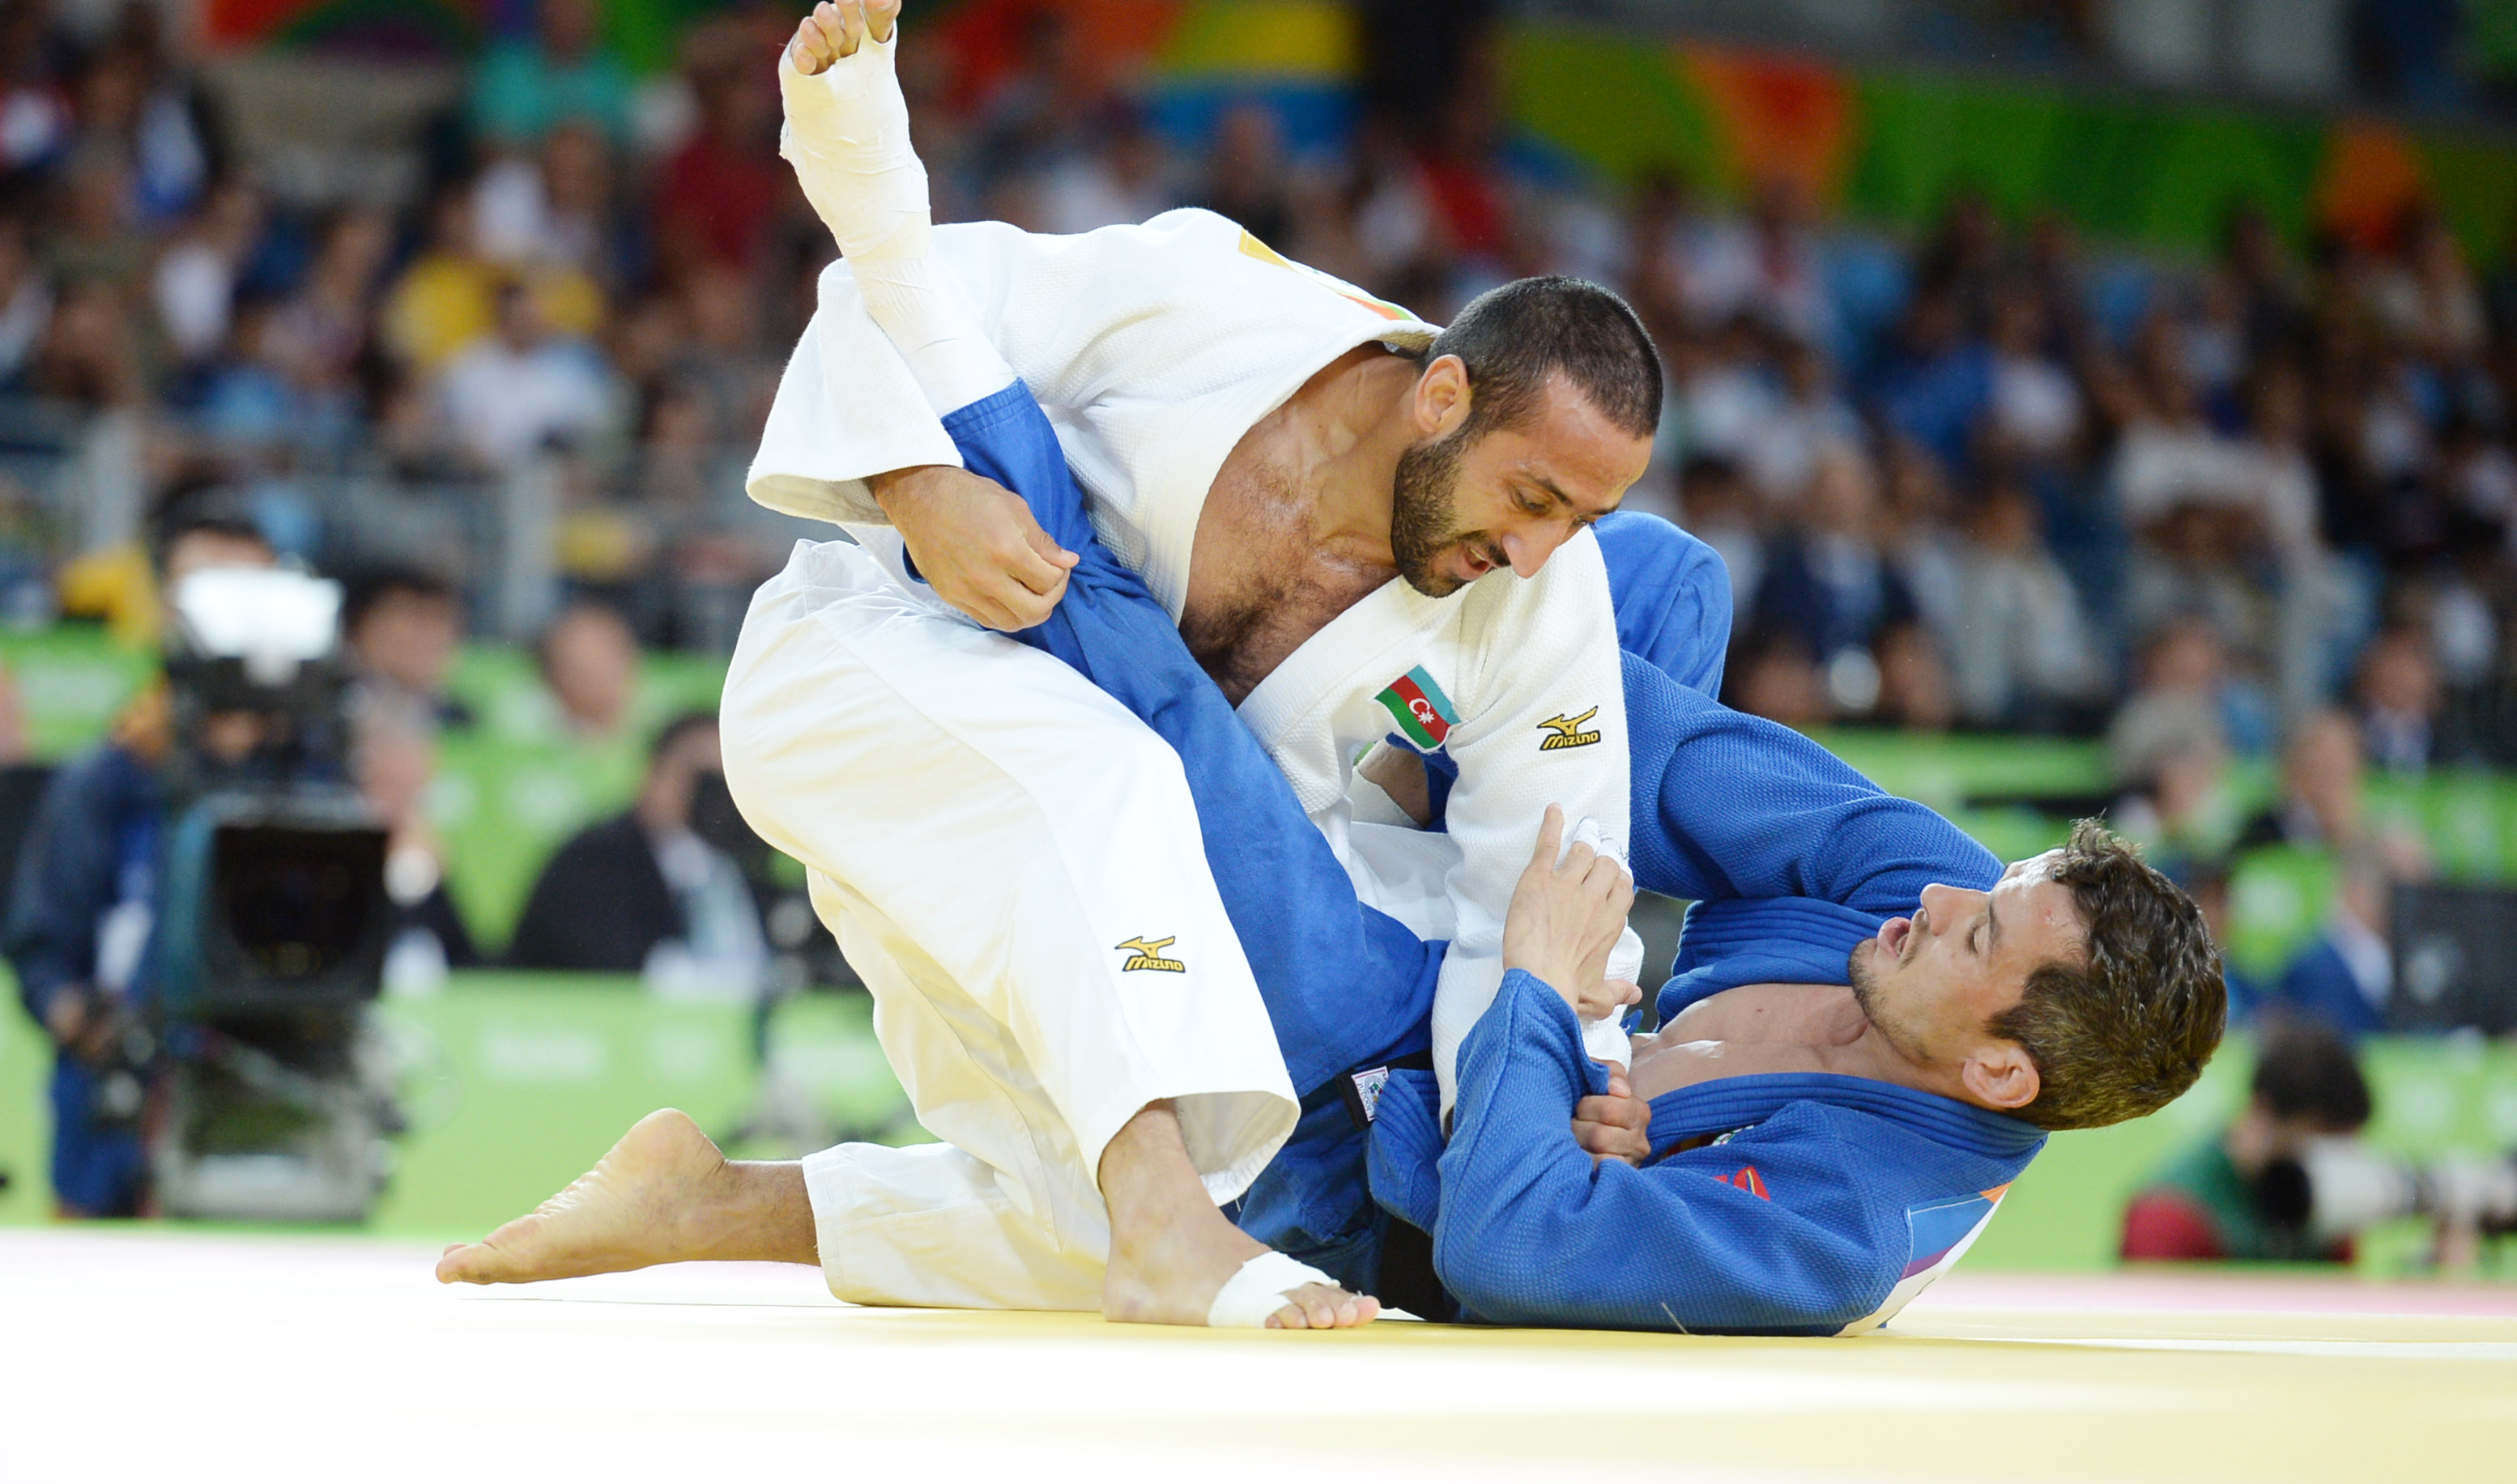 Judô nos Jogos Olímpicos e Paralímpicos” – Judô Rio